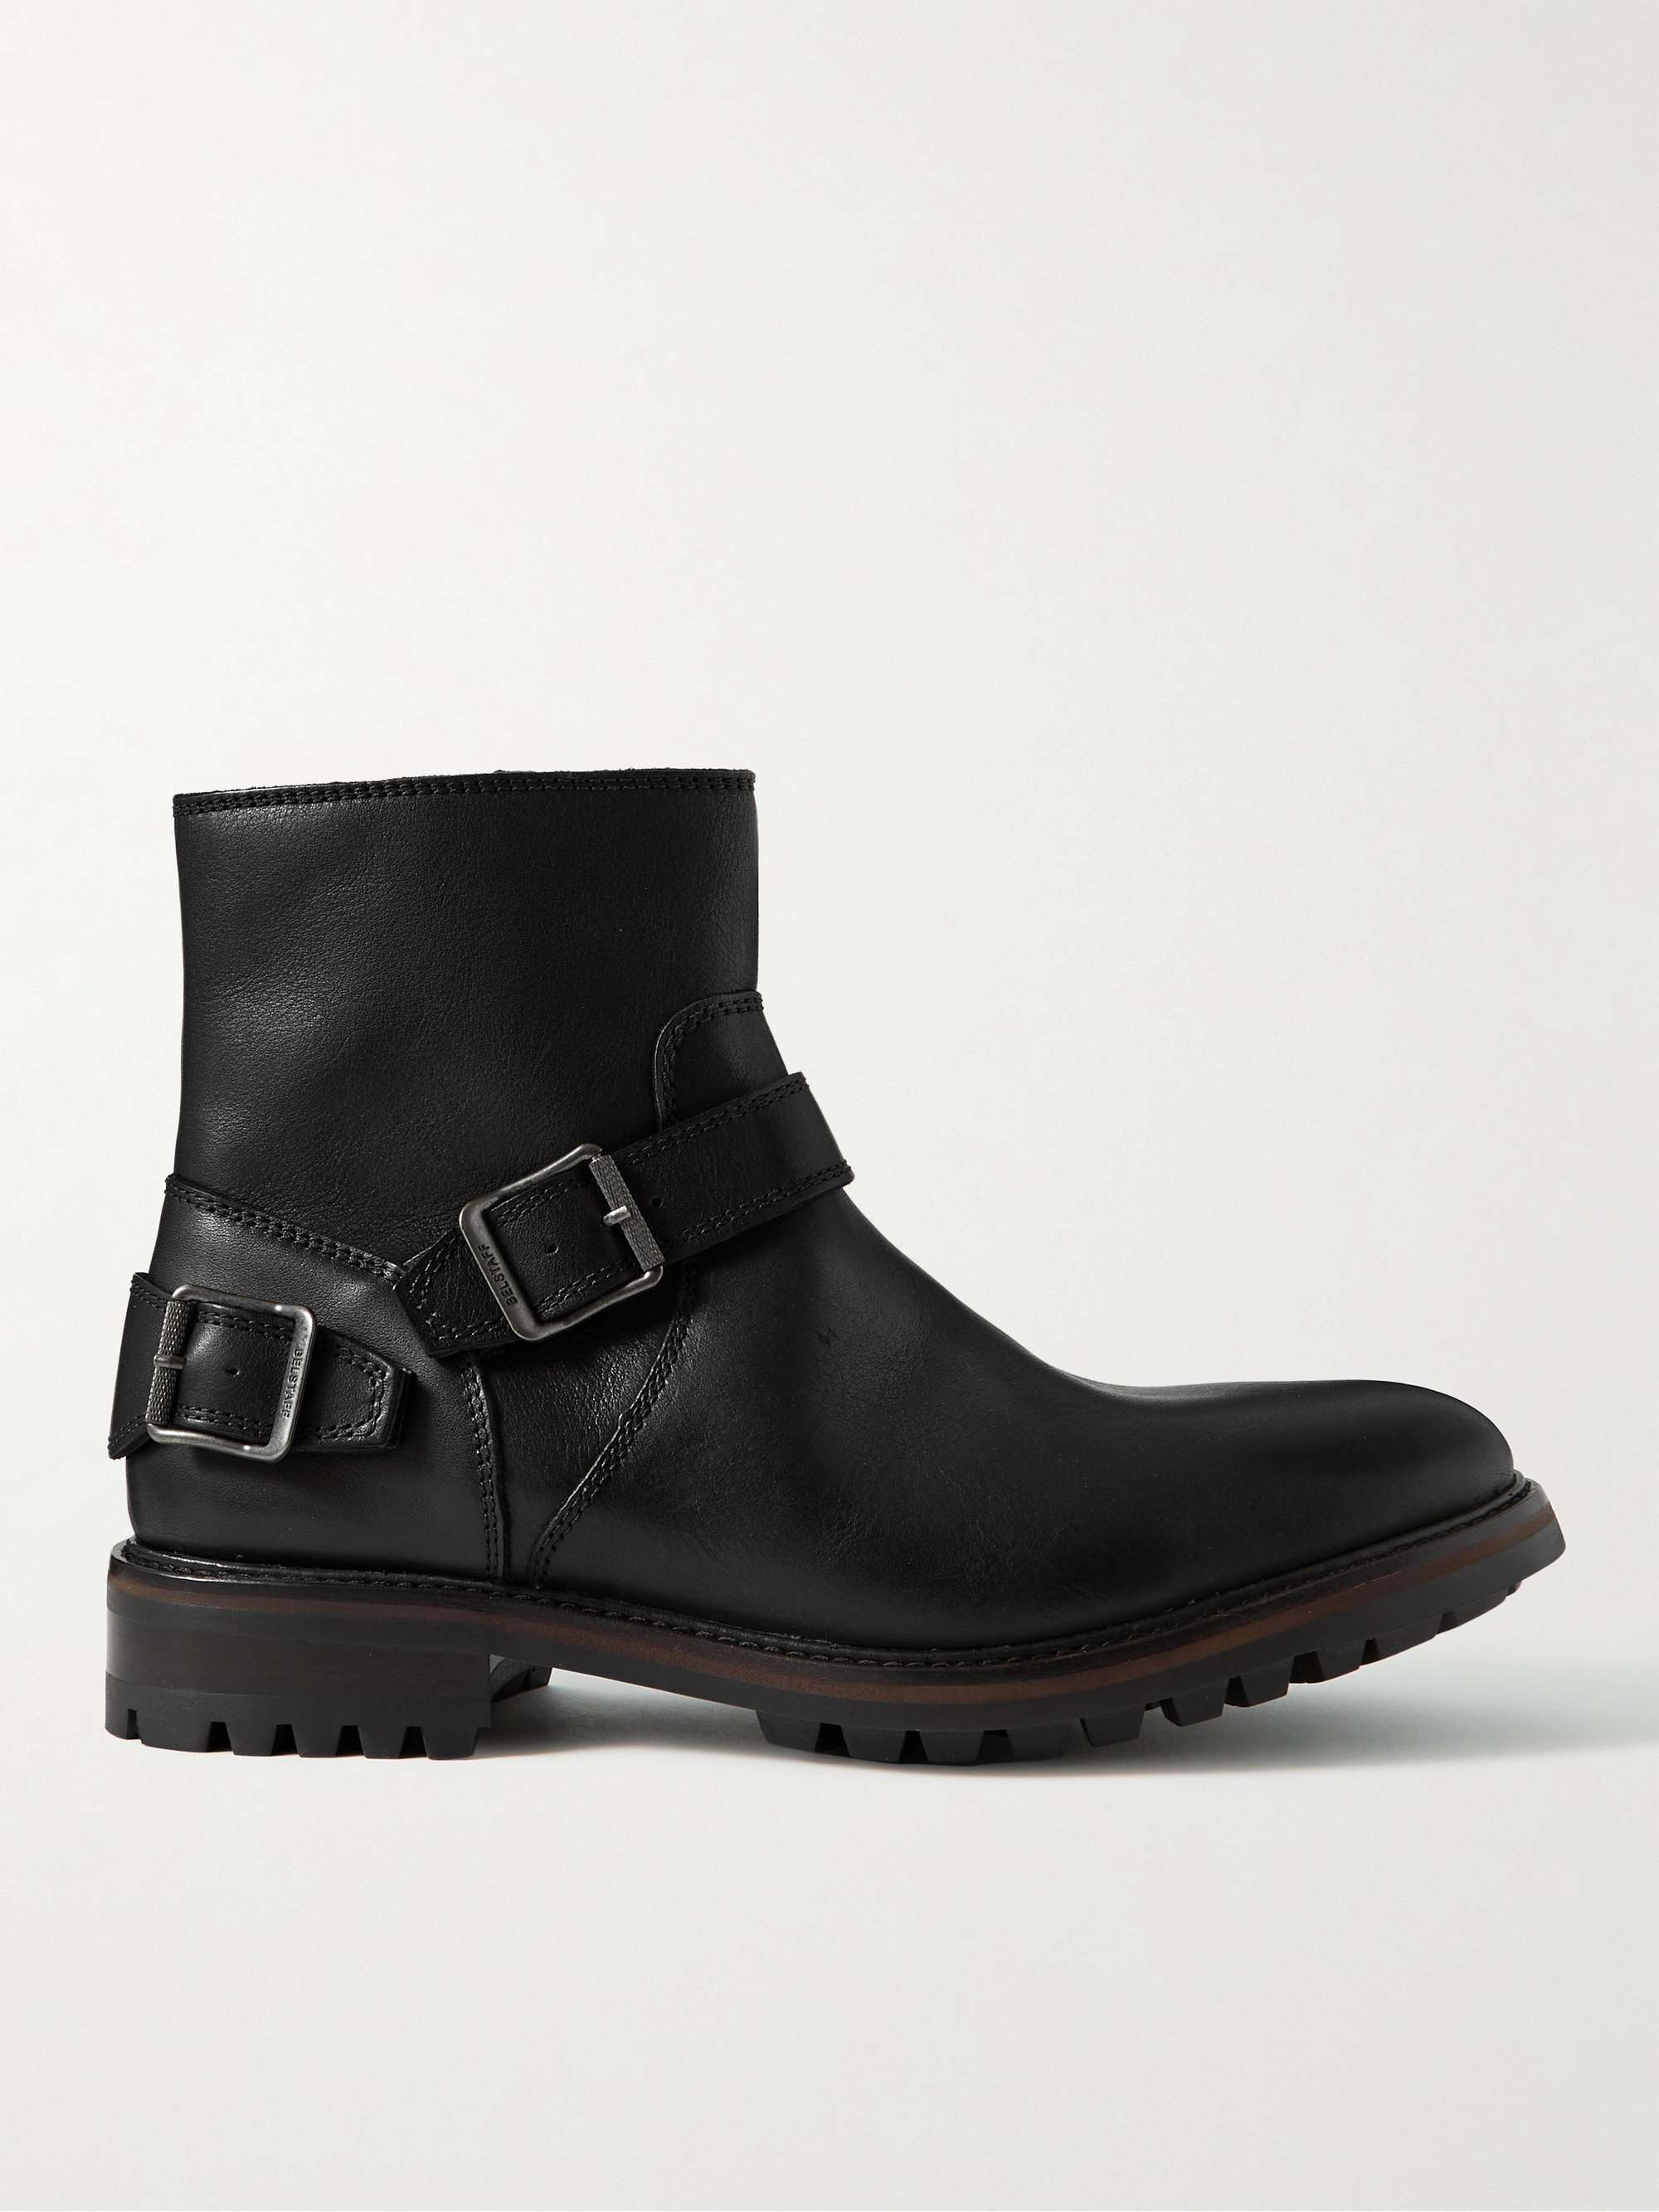 BELSTAFF Trialmaster Leather Boots | MR PORTER